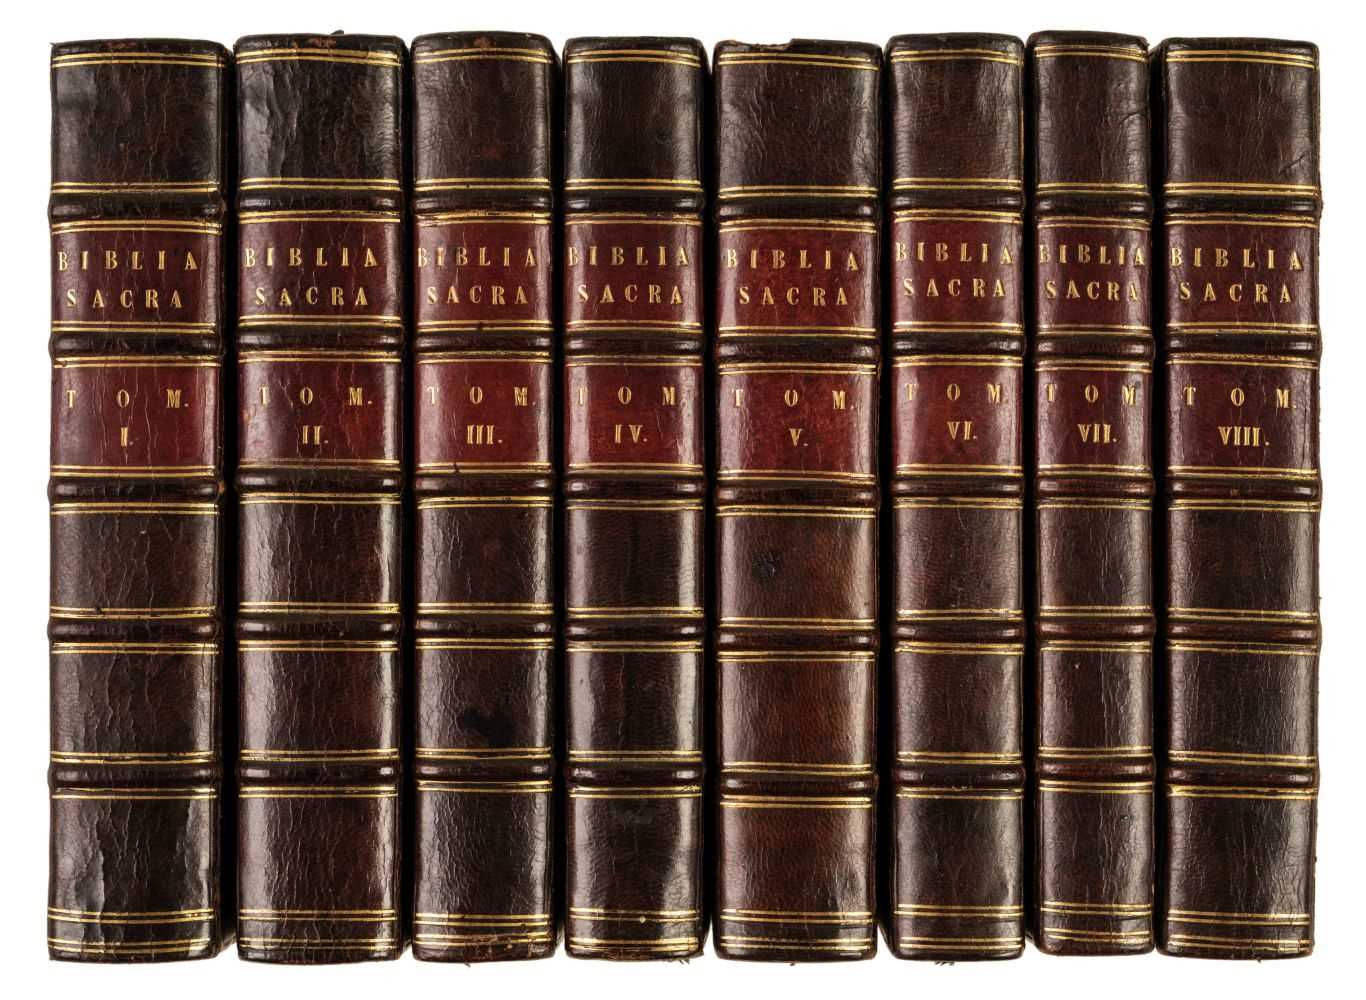 Lot 81 - Bible [Latin]. Biblia Sacra, Vulgatae Editionis, Sixti V. Pont. Max., 8 vols., Paris, 1651-52